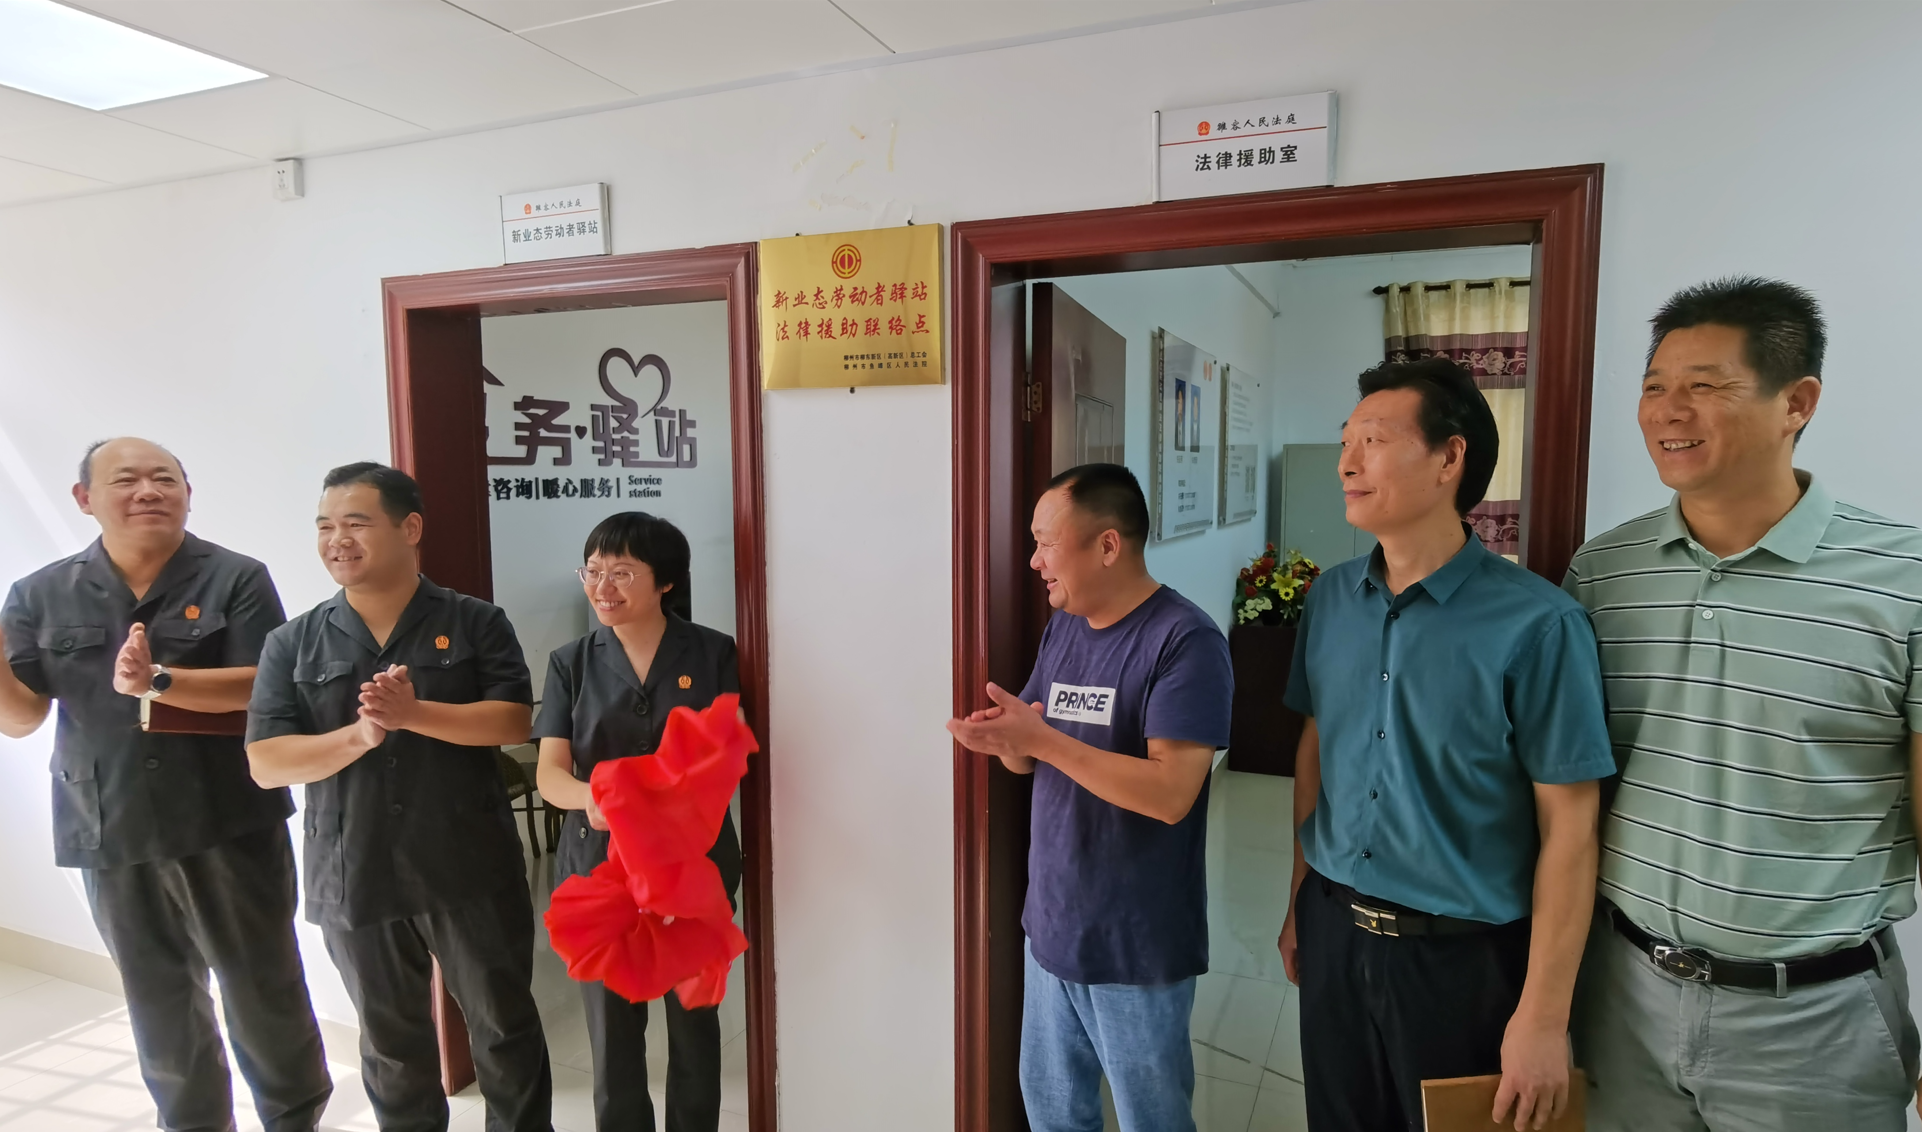 柳州市首个新业态劳动者驿站法律援助联络点在柳东新区雒容镇揭牌